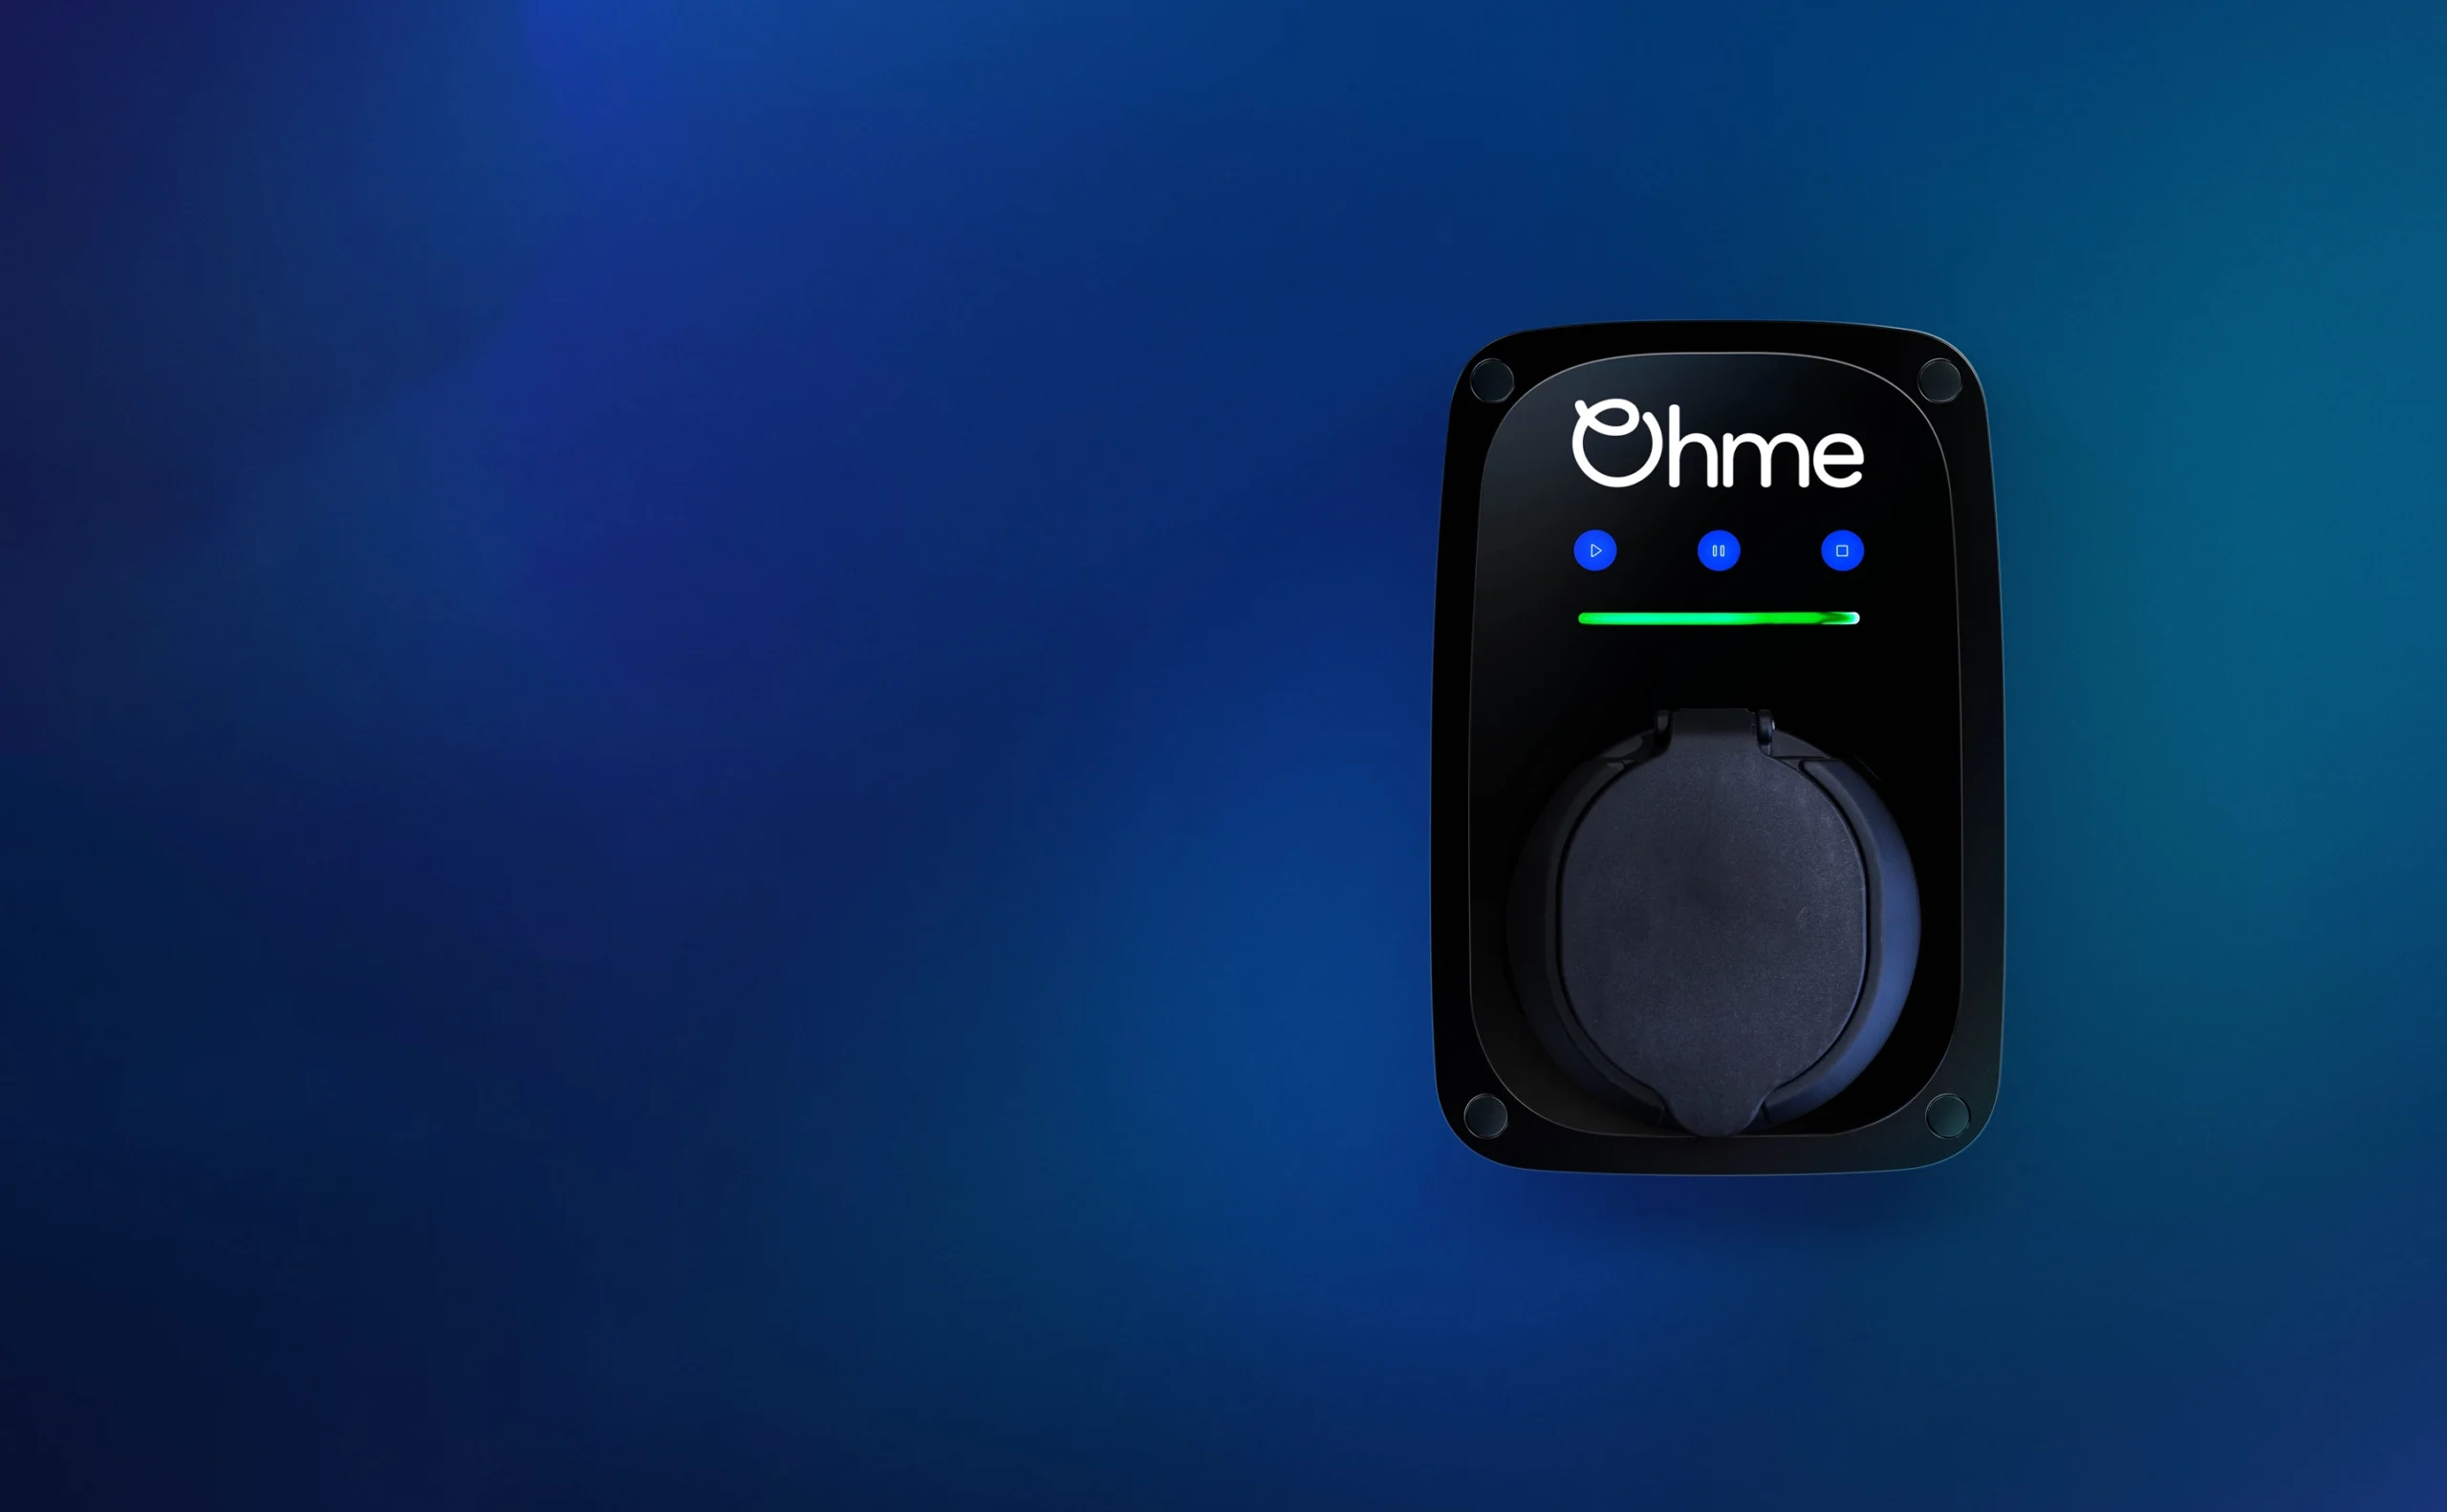 Visuel de la borne de recharge Ohme ePod S sur fond coloré